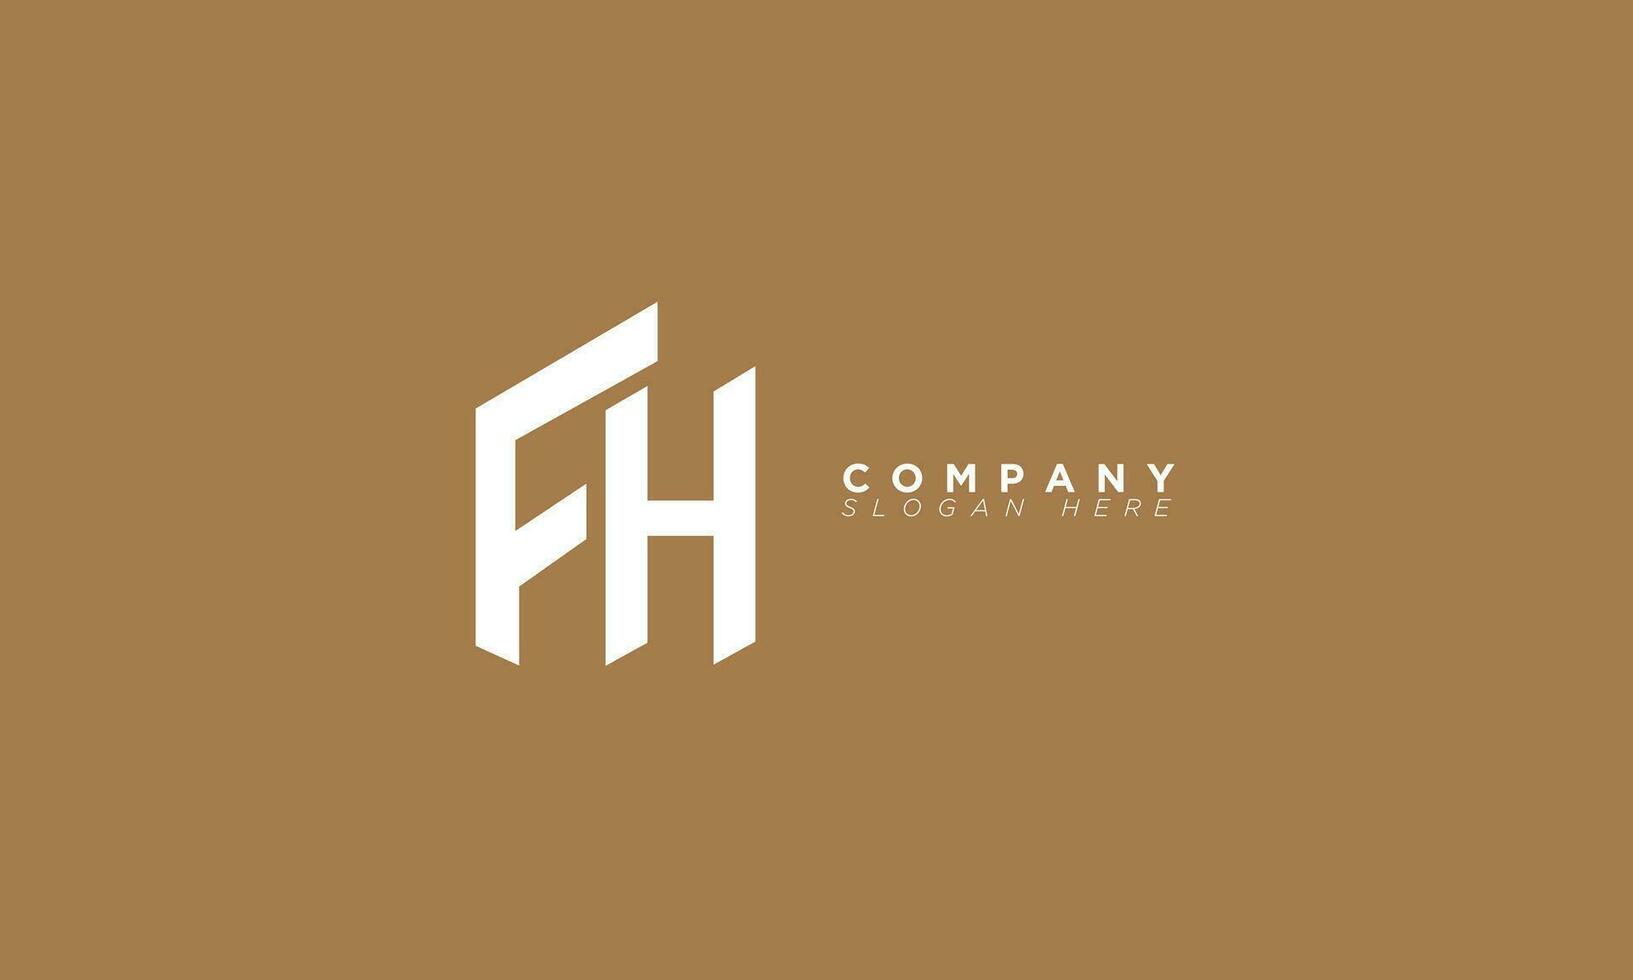 fh alfabetet bokstäver initialer monogram logotyp hf, f och h vektor